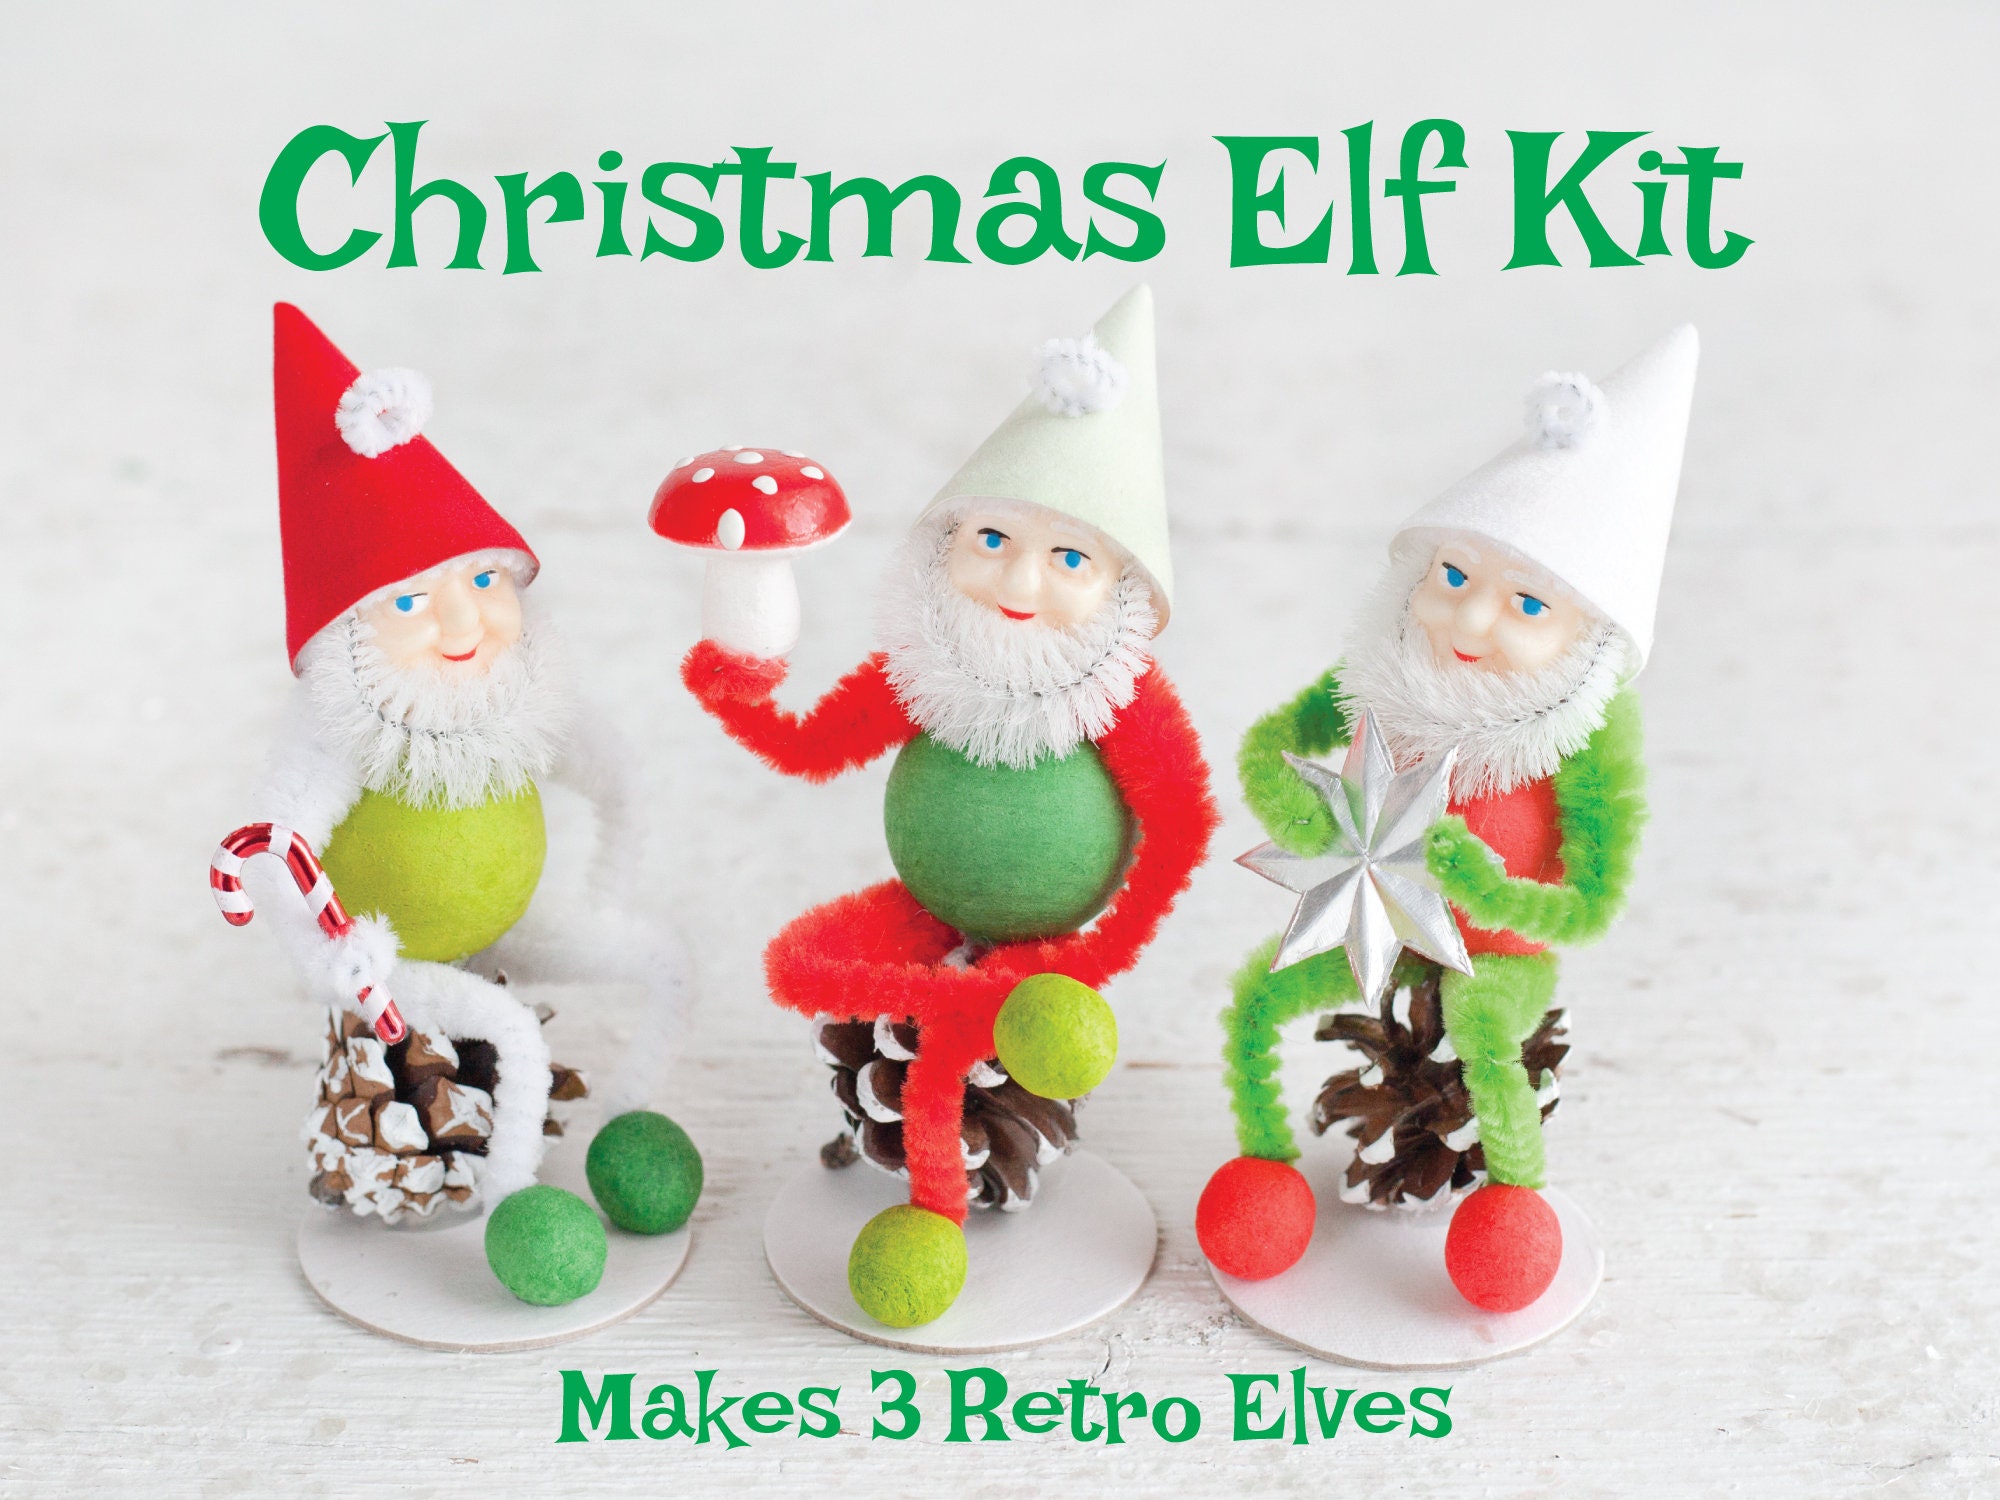 Elf Bodies - Multi Color Tinted 25mm Spun Cotton Balls, 12 Pcs.